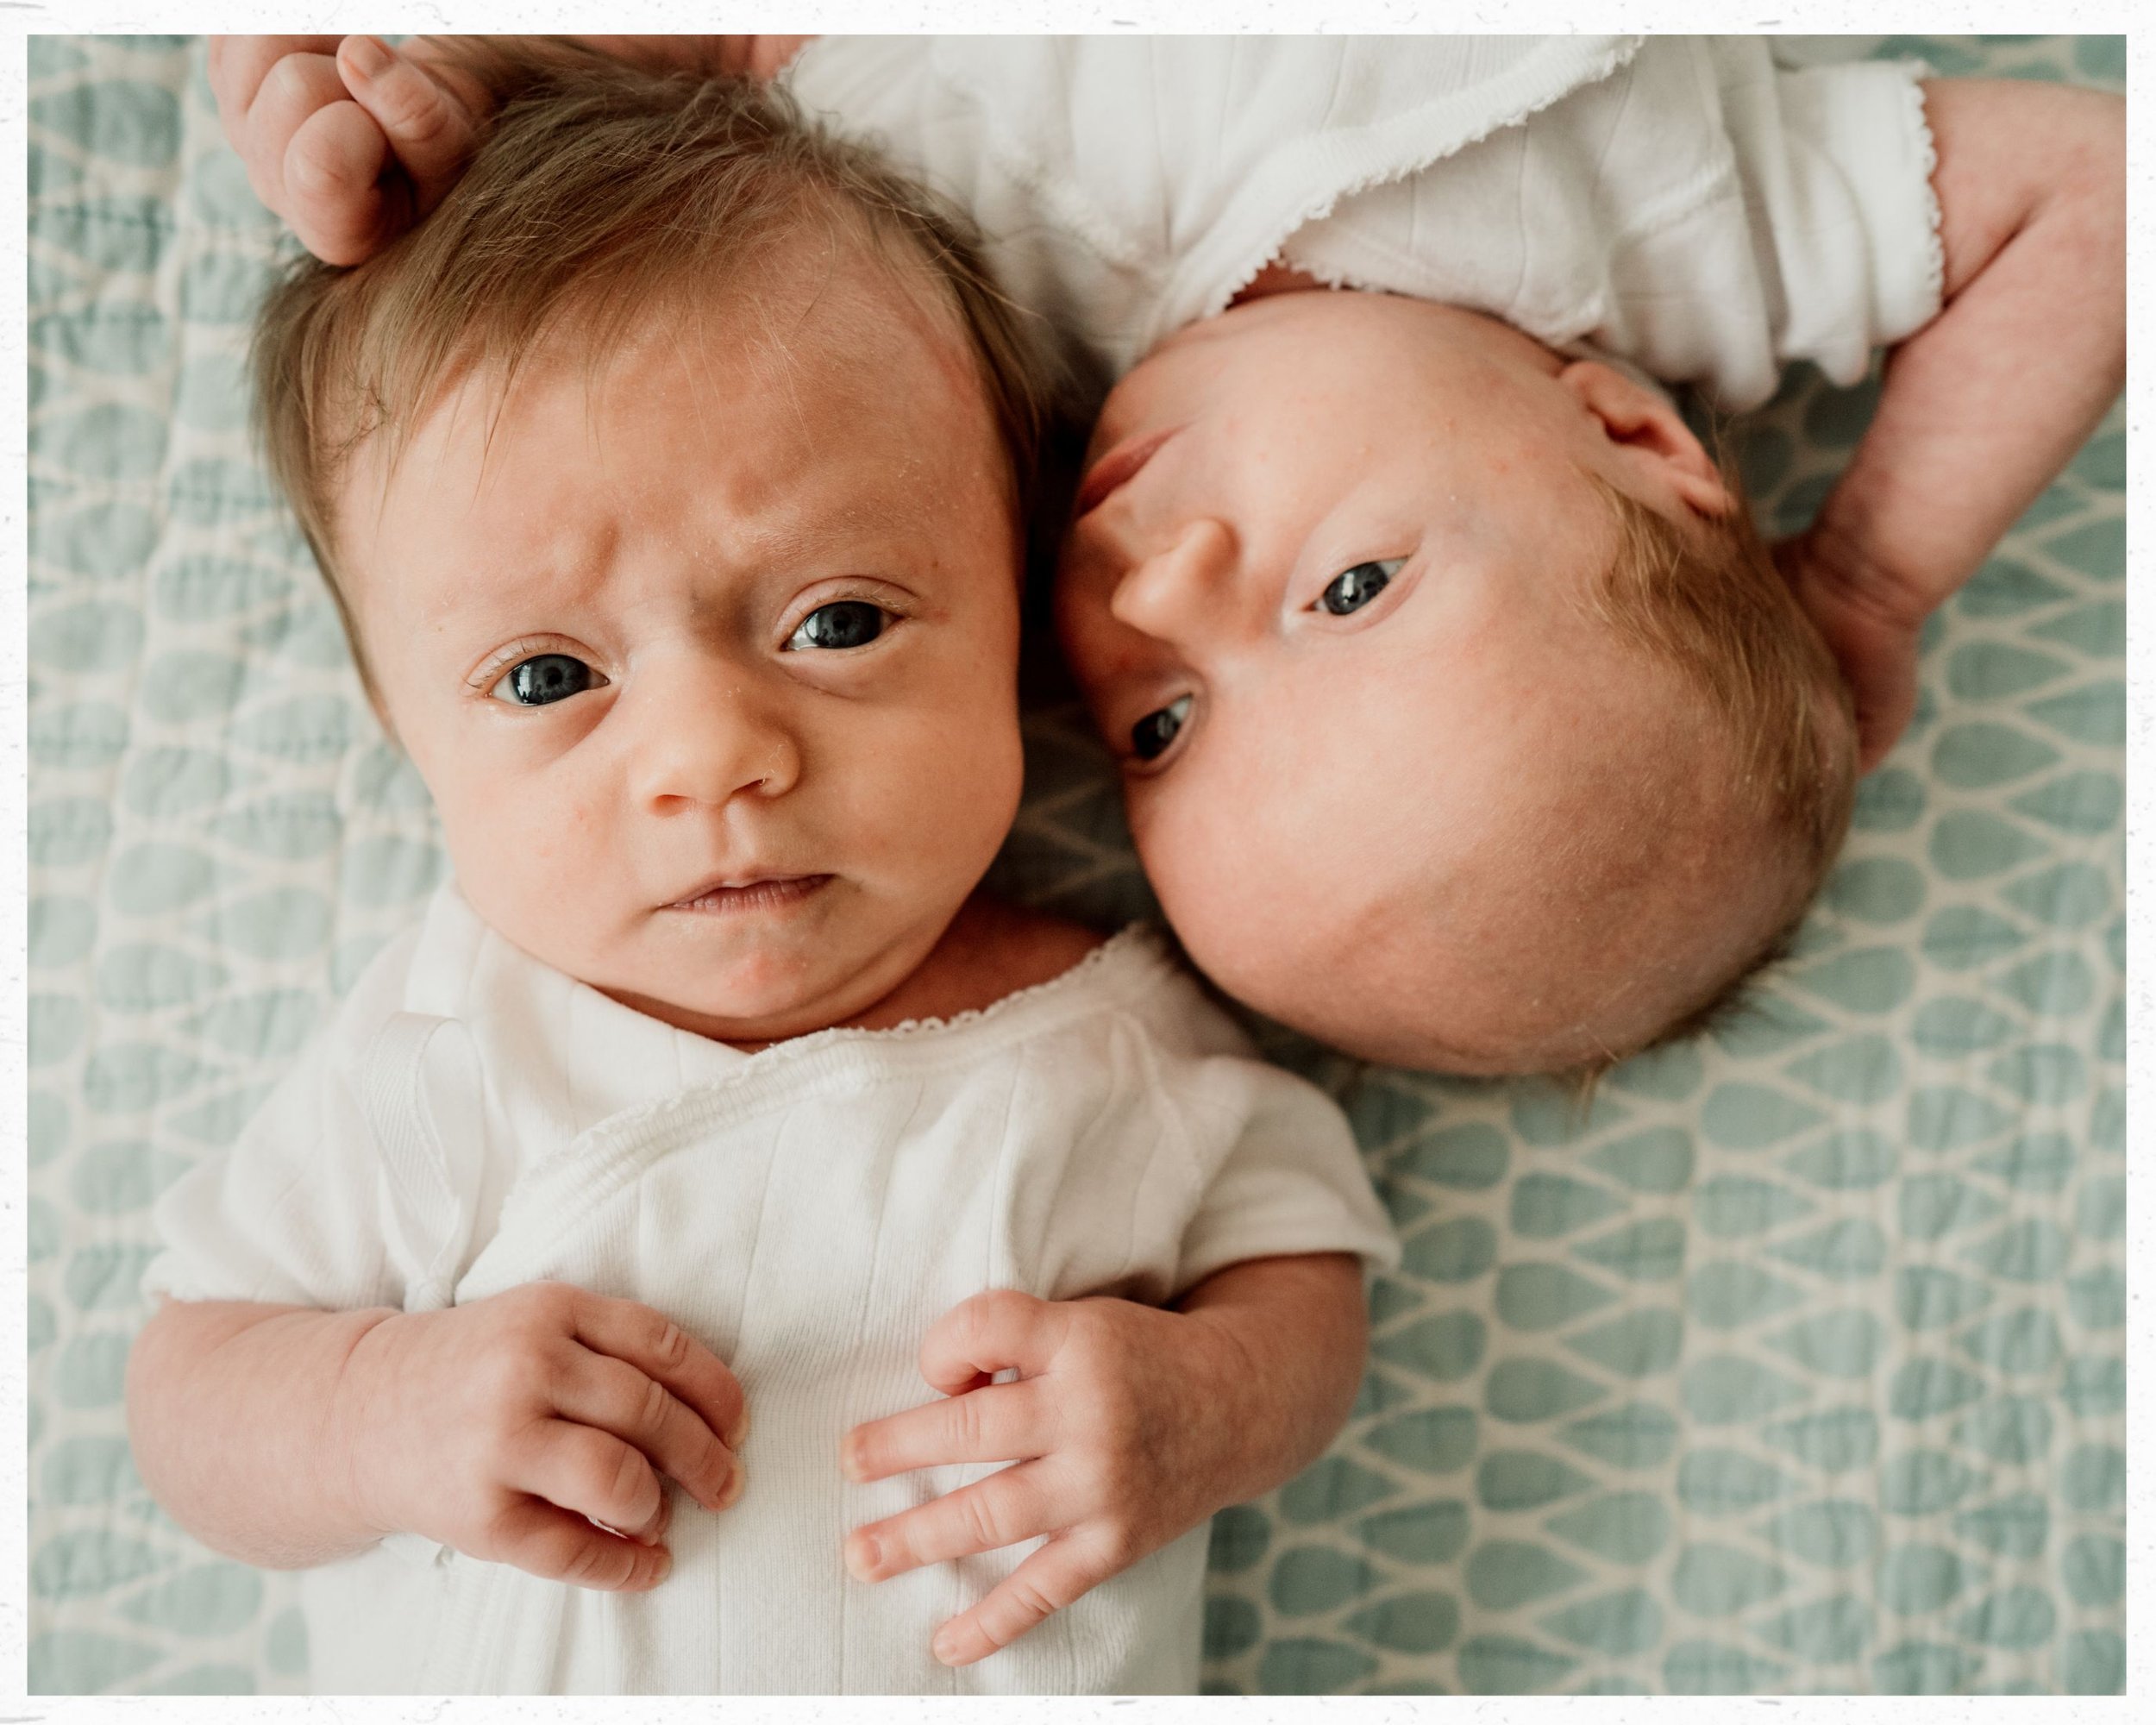 when-to-schedule-newborn-photos-one-month-11.jpg